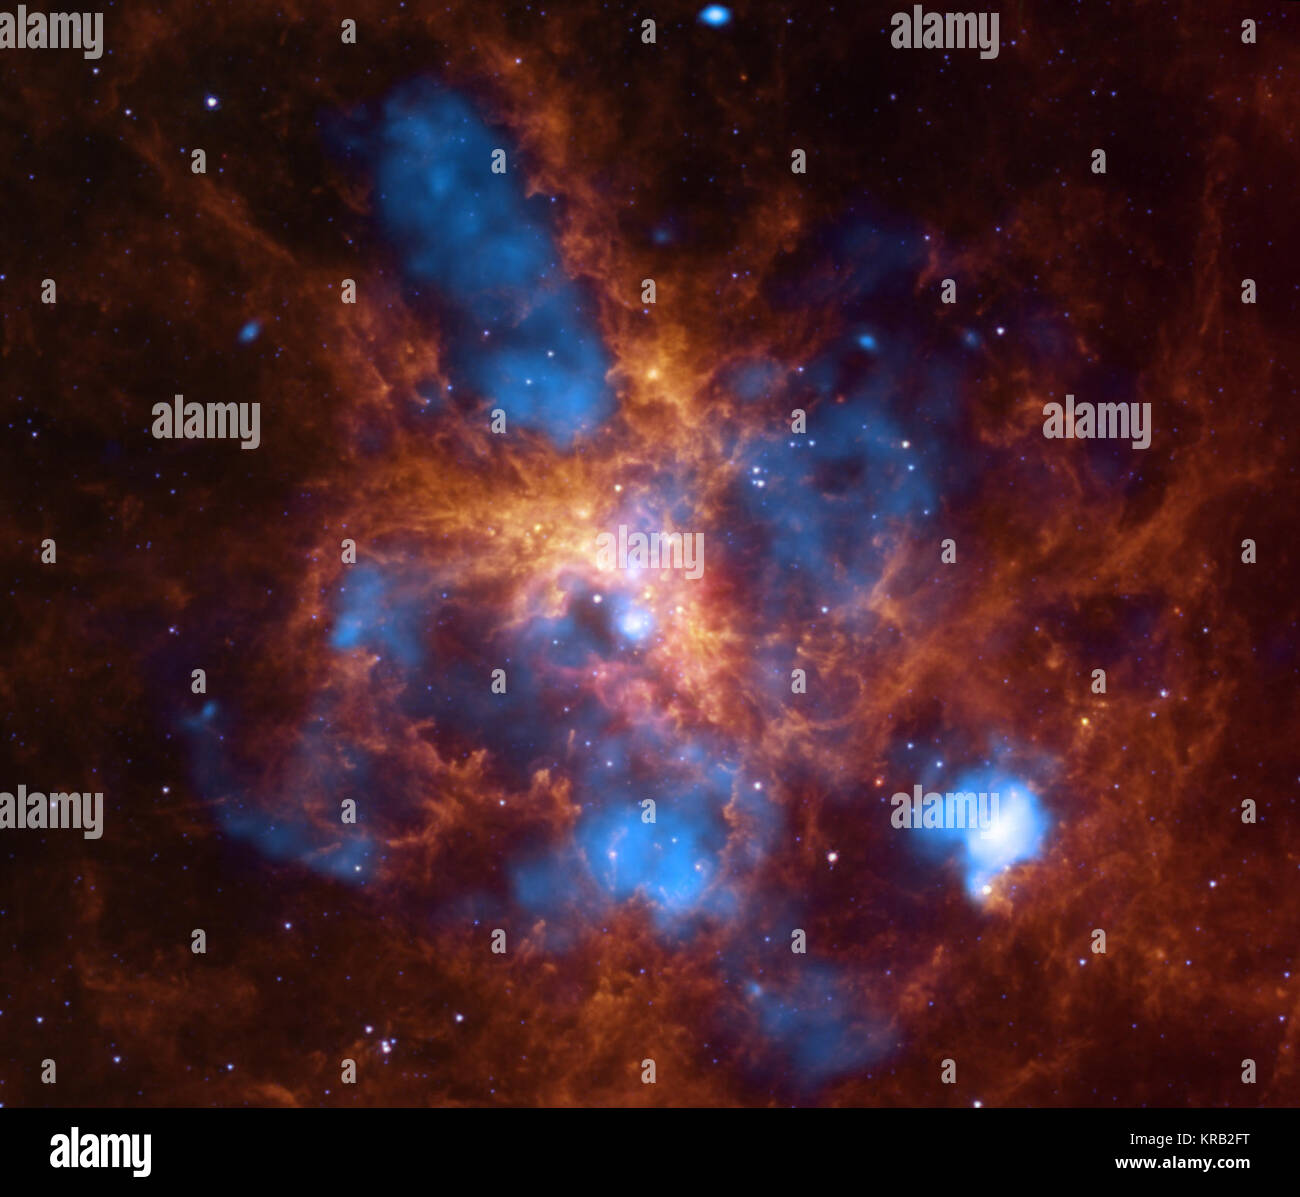 Circa 2400 stelle massicce nel centro di 30 Doradus producono una radiazione intensa e potenti venti come essi soffiare il materiale. Svariati milioni di grado gas rivelato in raggi X (blu) dall'osservatorio a raggi X Chandra proviene da fronti d'urto formata da questi venti stellari e dalle esplosioni di supernova. Questo gas caldo si ritaglia un bolle gigantesche nel circostante refrigeratore di gas e polveri mostrato qui in emissione di infrarossi dal telescopio spaziale Spitzer (arancione). 30 Doradus - La crescente Tarantola entro Foto Stock